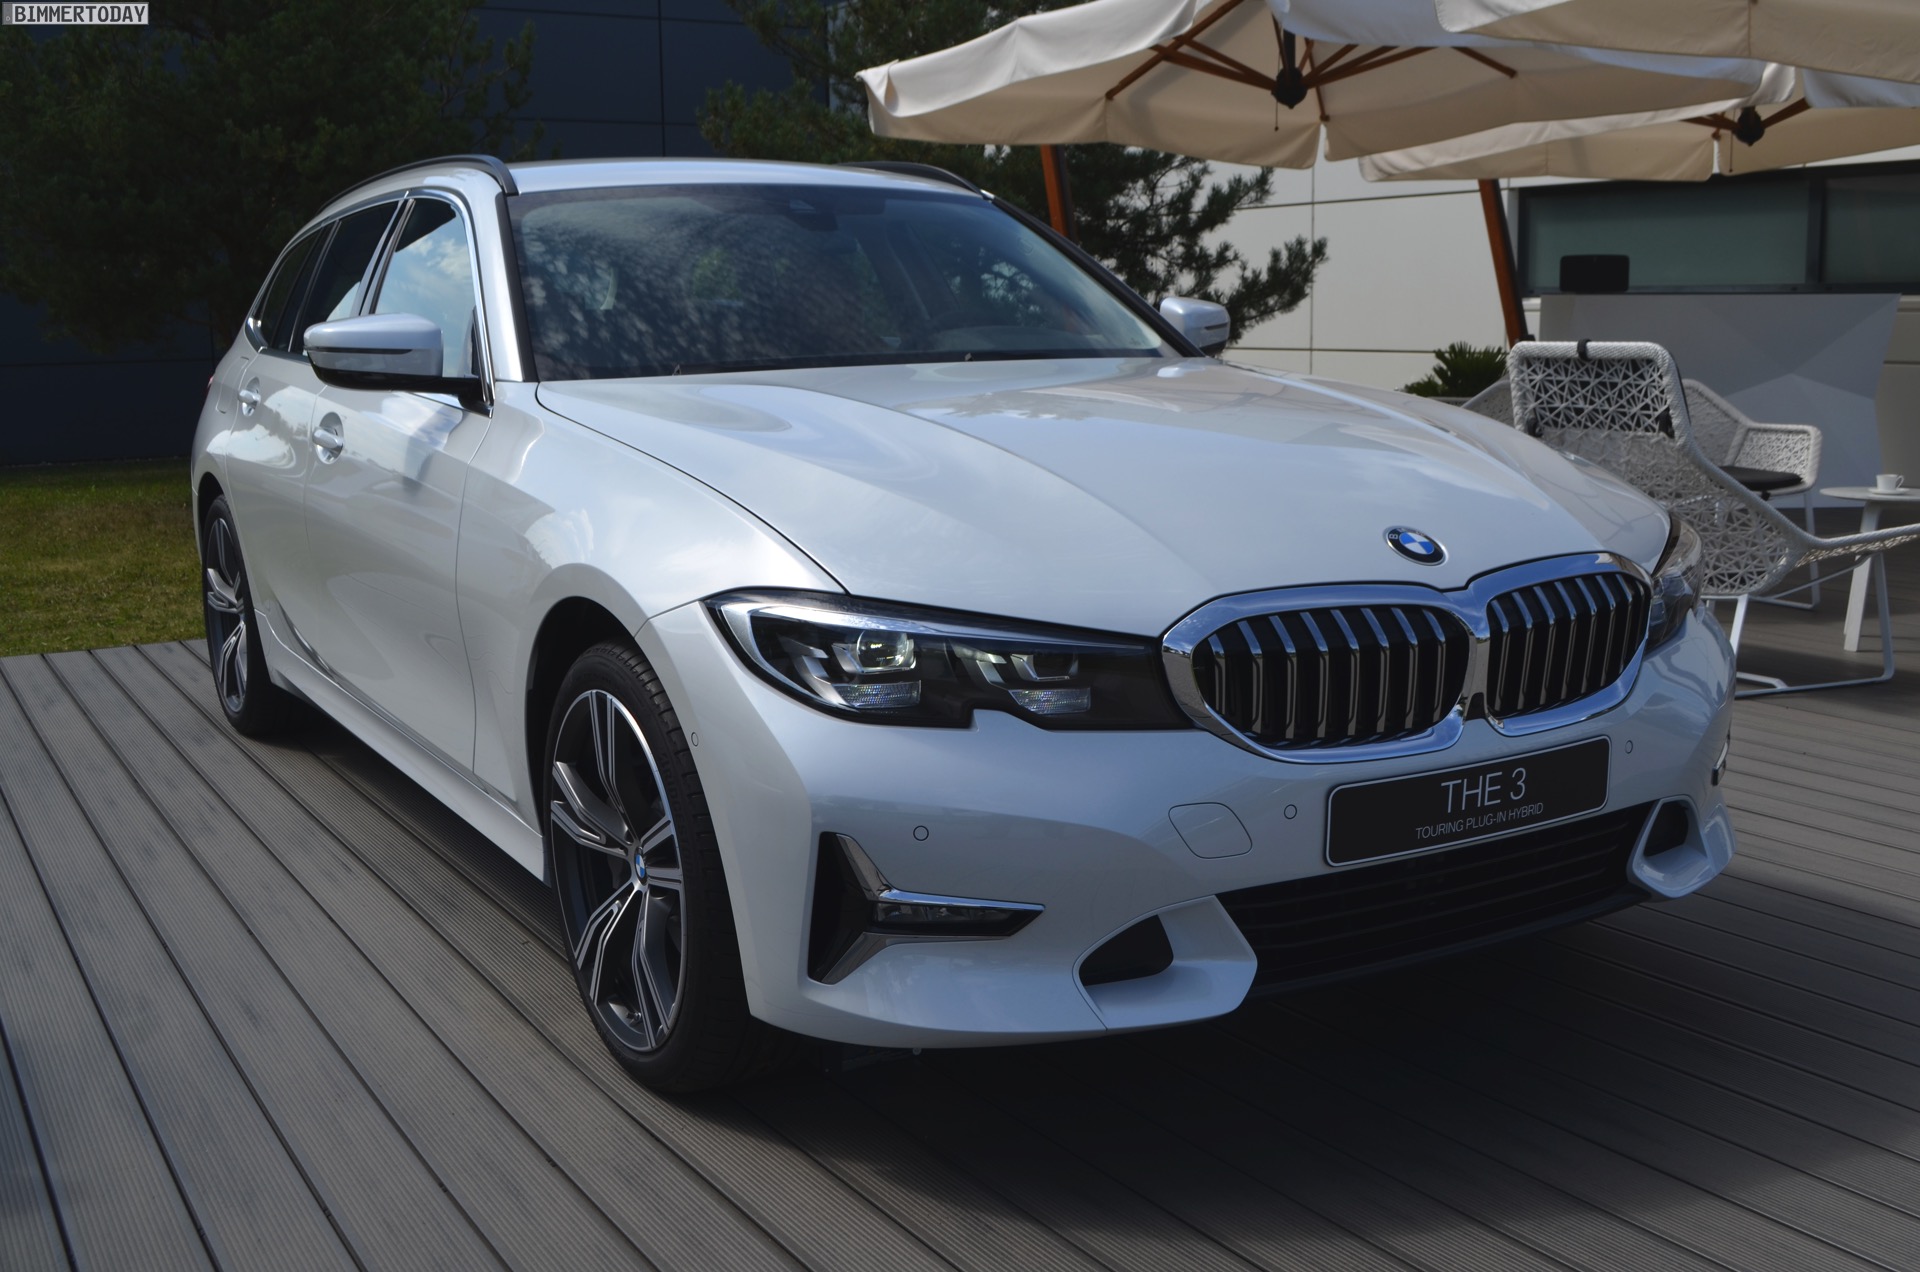 2020-BMW-330e-Touring-G21-3er-Plug-in-Hybrid-01.jpg